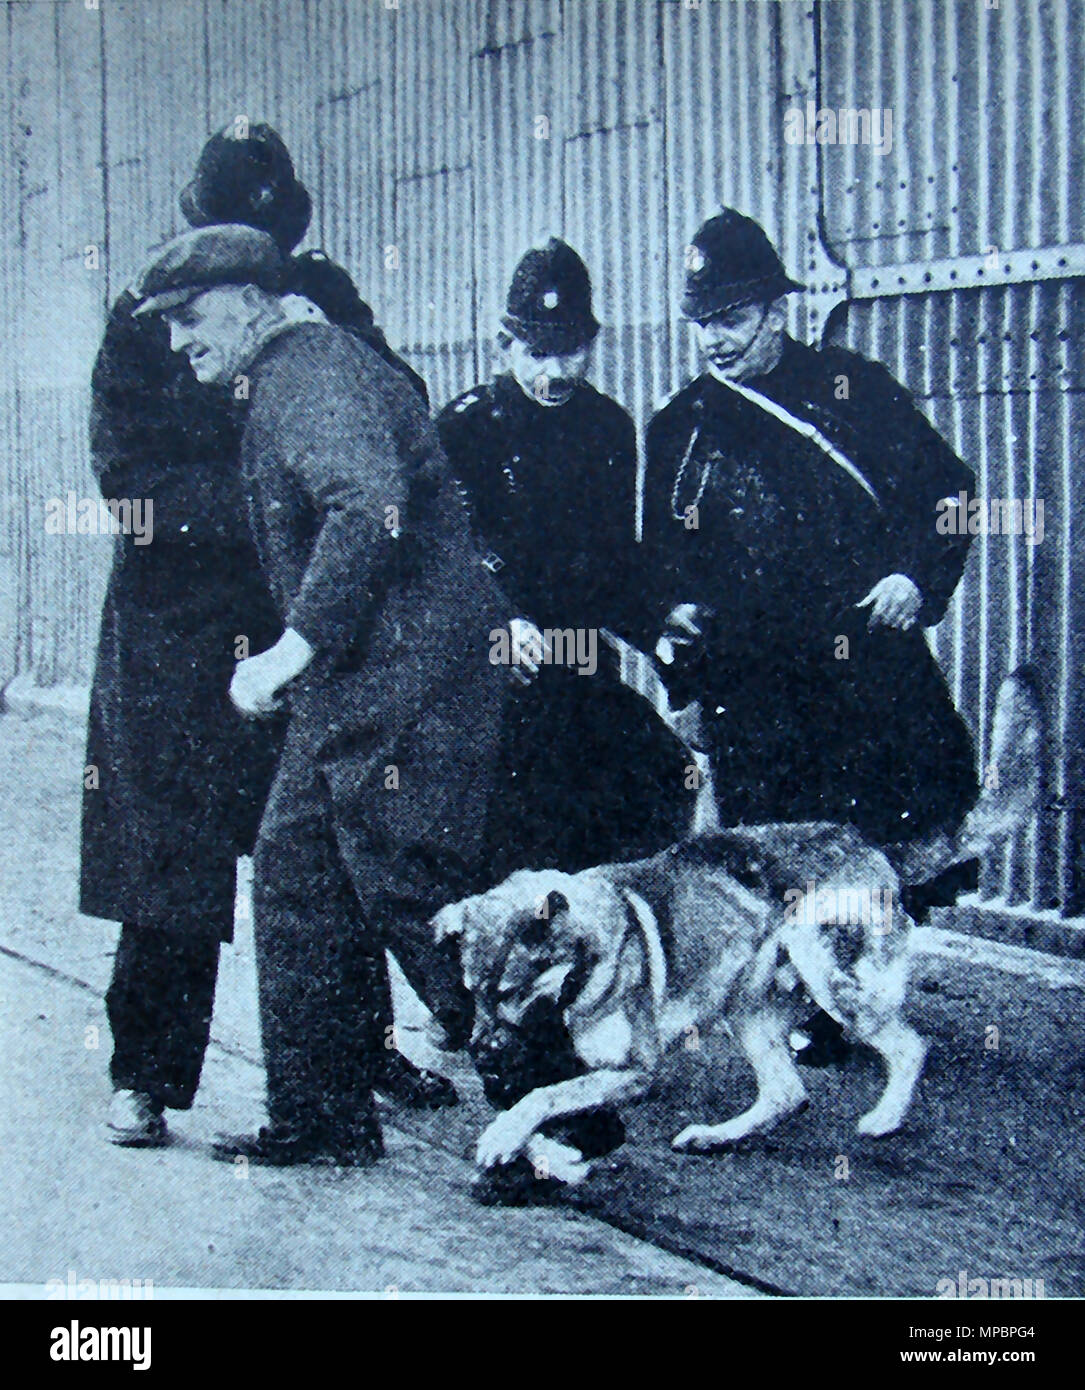 Recht und Ordnung in Großbritannien - ein 1942 Abbildung: ein Polizeihund speziell auf Reise nicht beißen (verletzt) Diebe rationen Diebstahl von Waren ausgebildete Waggons für den Schwarzen Markt während des Zweiten Weltkriegs Stockfoto